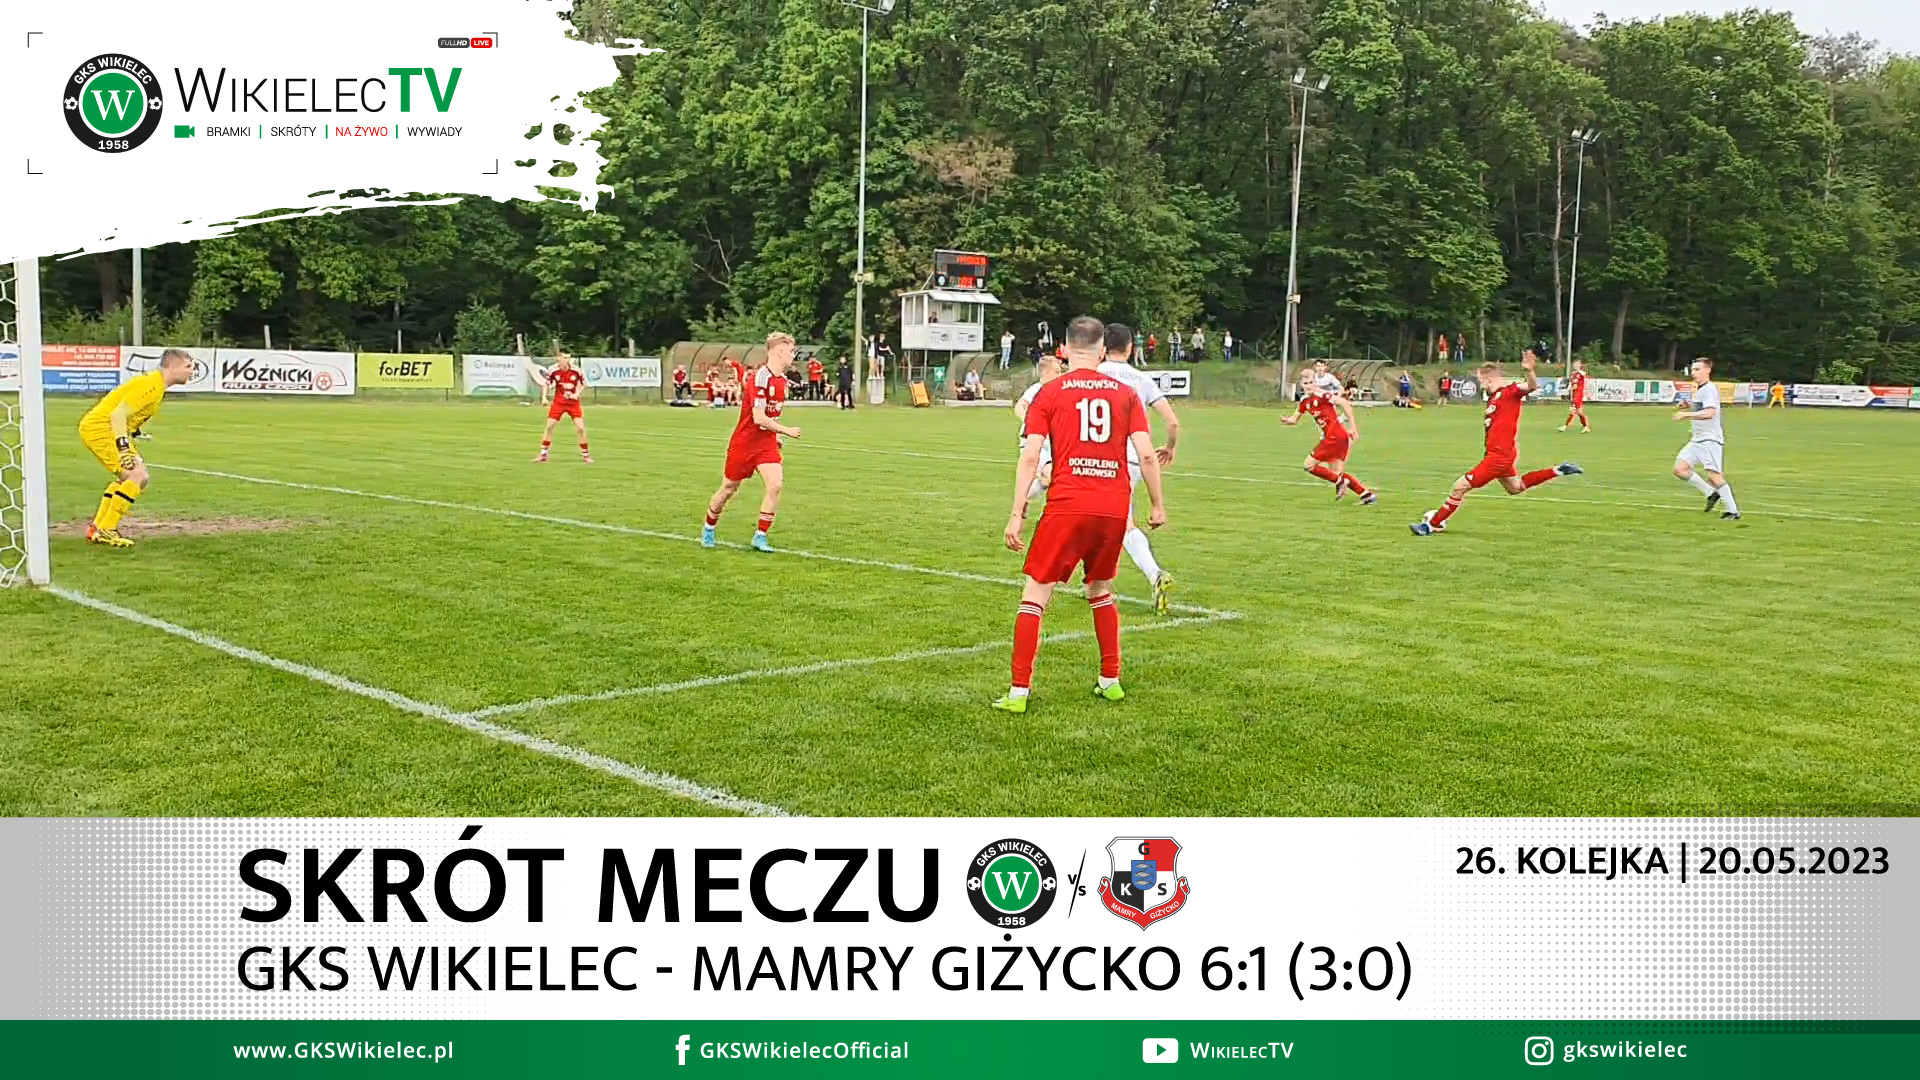 WikielecTV: Skrót meczu GKS Wikielec – Mamry Giżycko 6:1 (3:0)